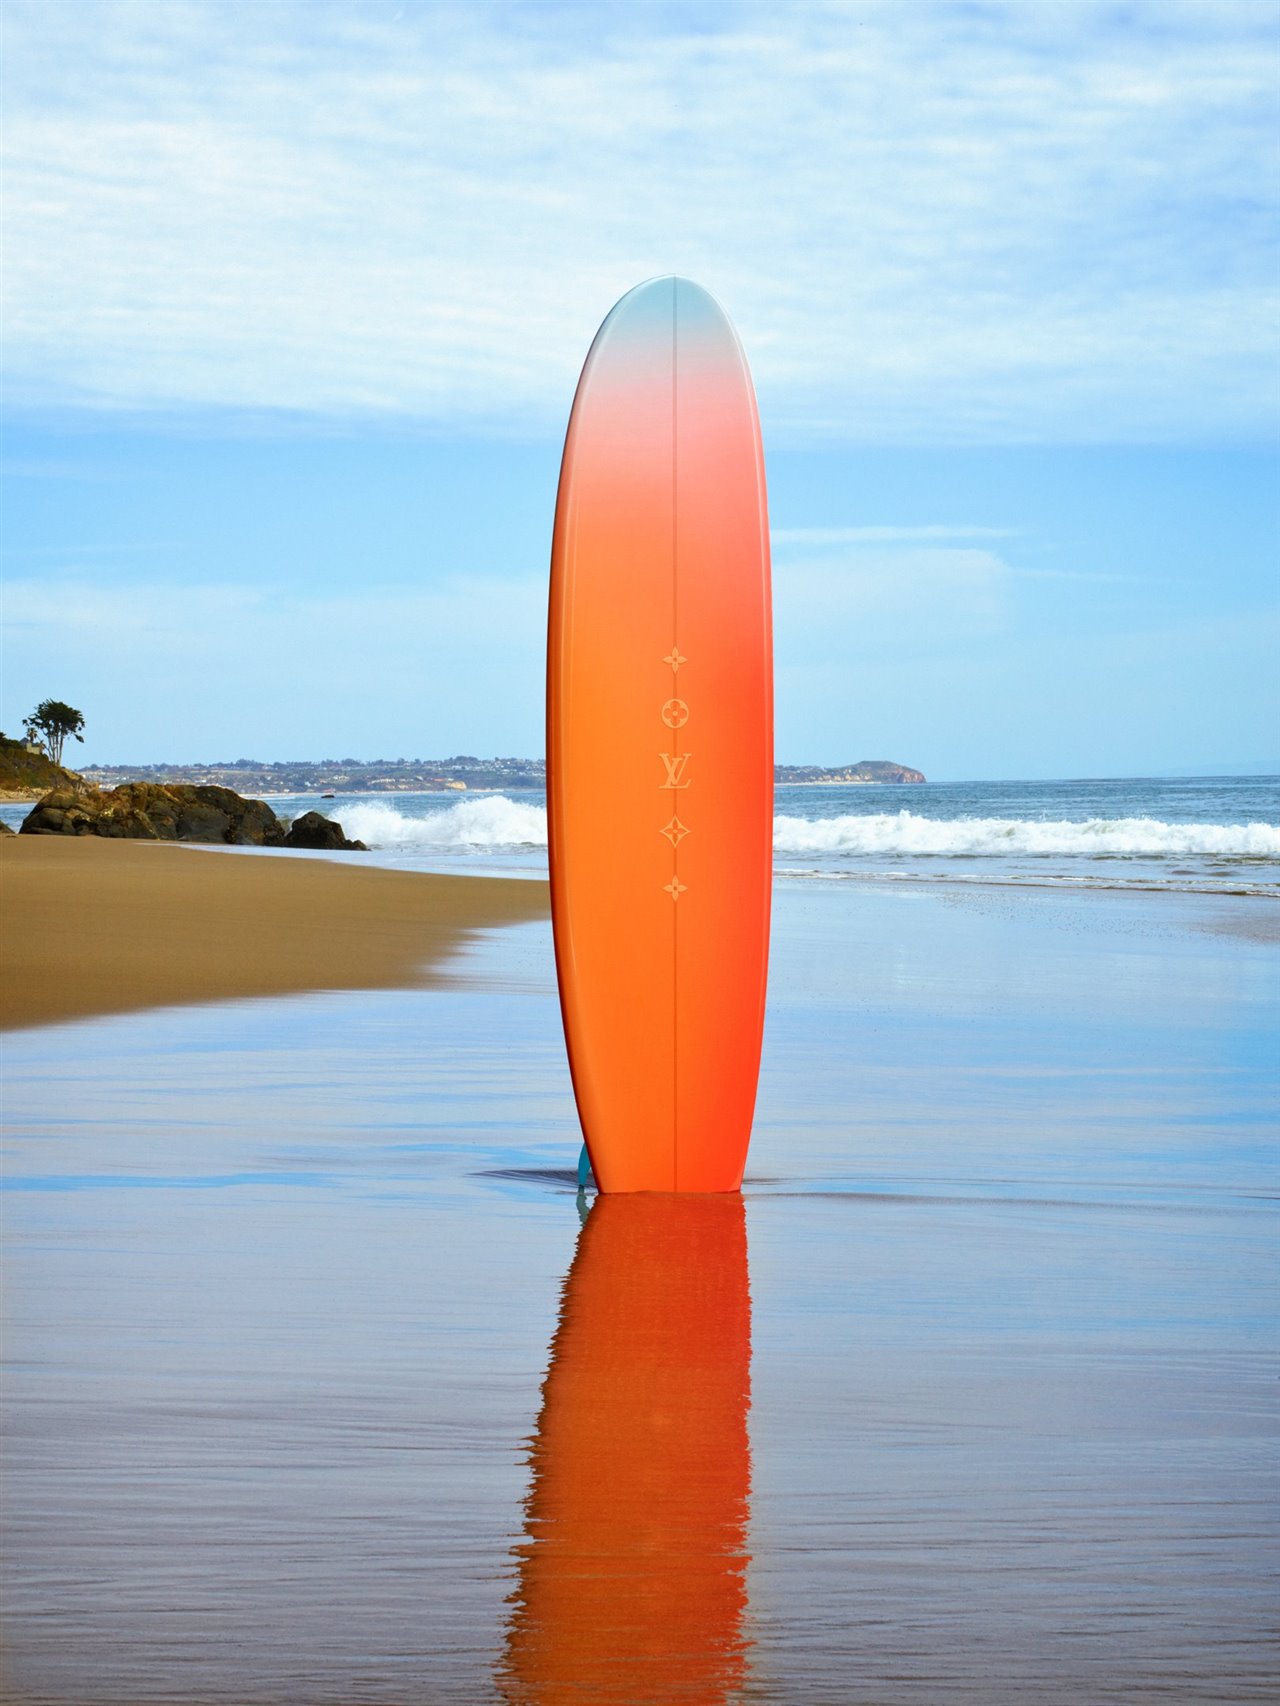 El degradado de la tabla, de azul a naranja, se basa en los colores de las puestas de sol californianas.